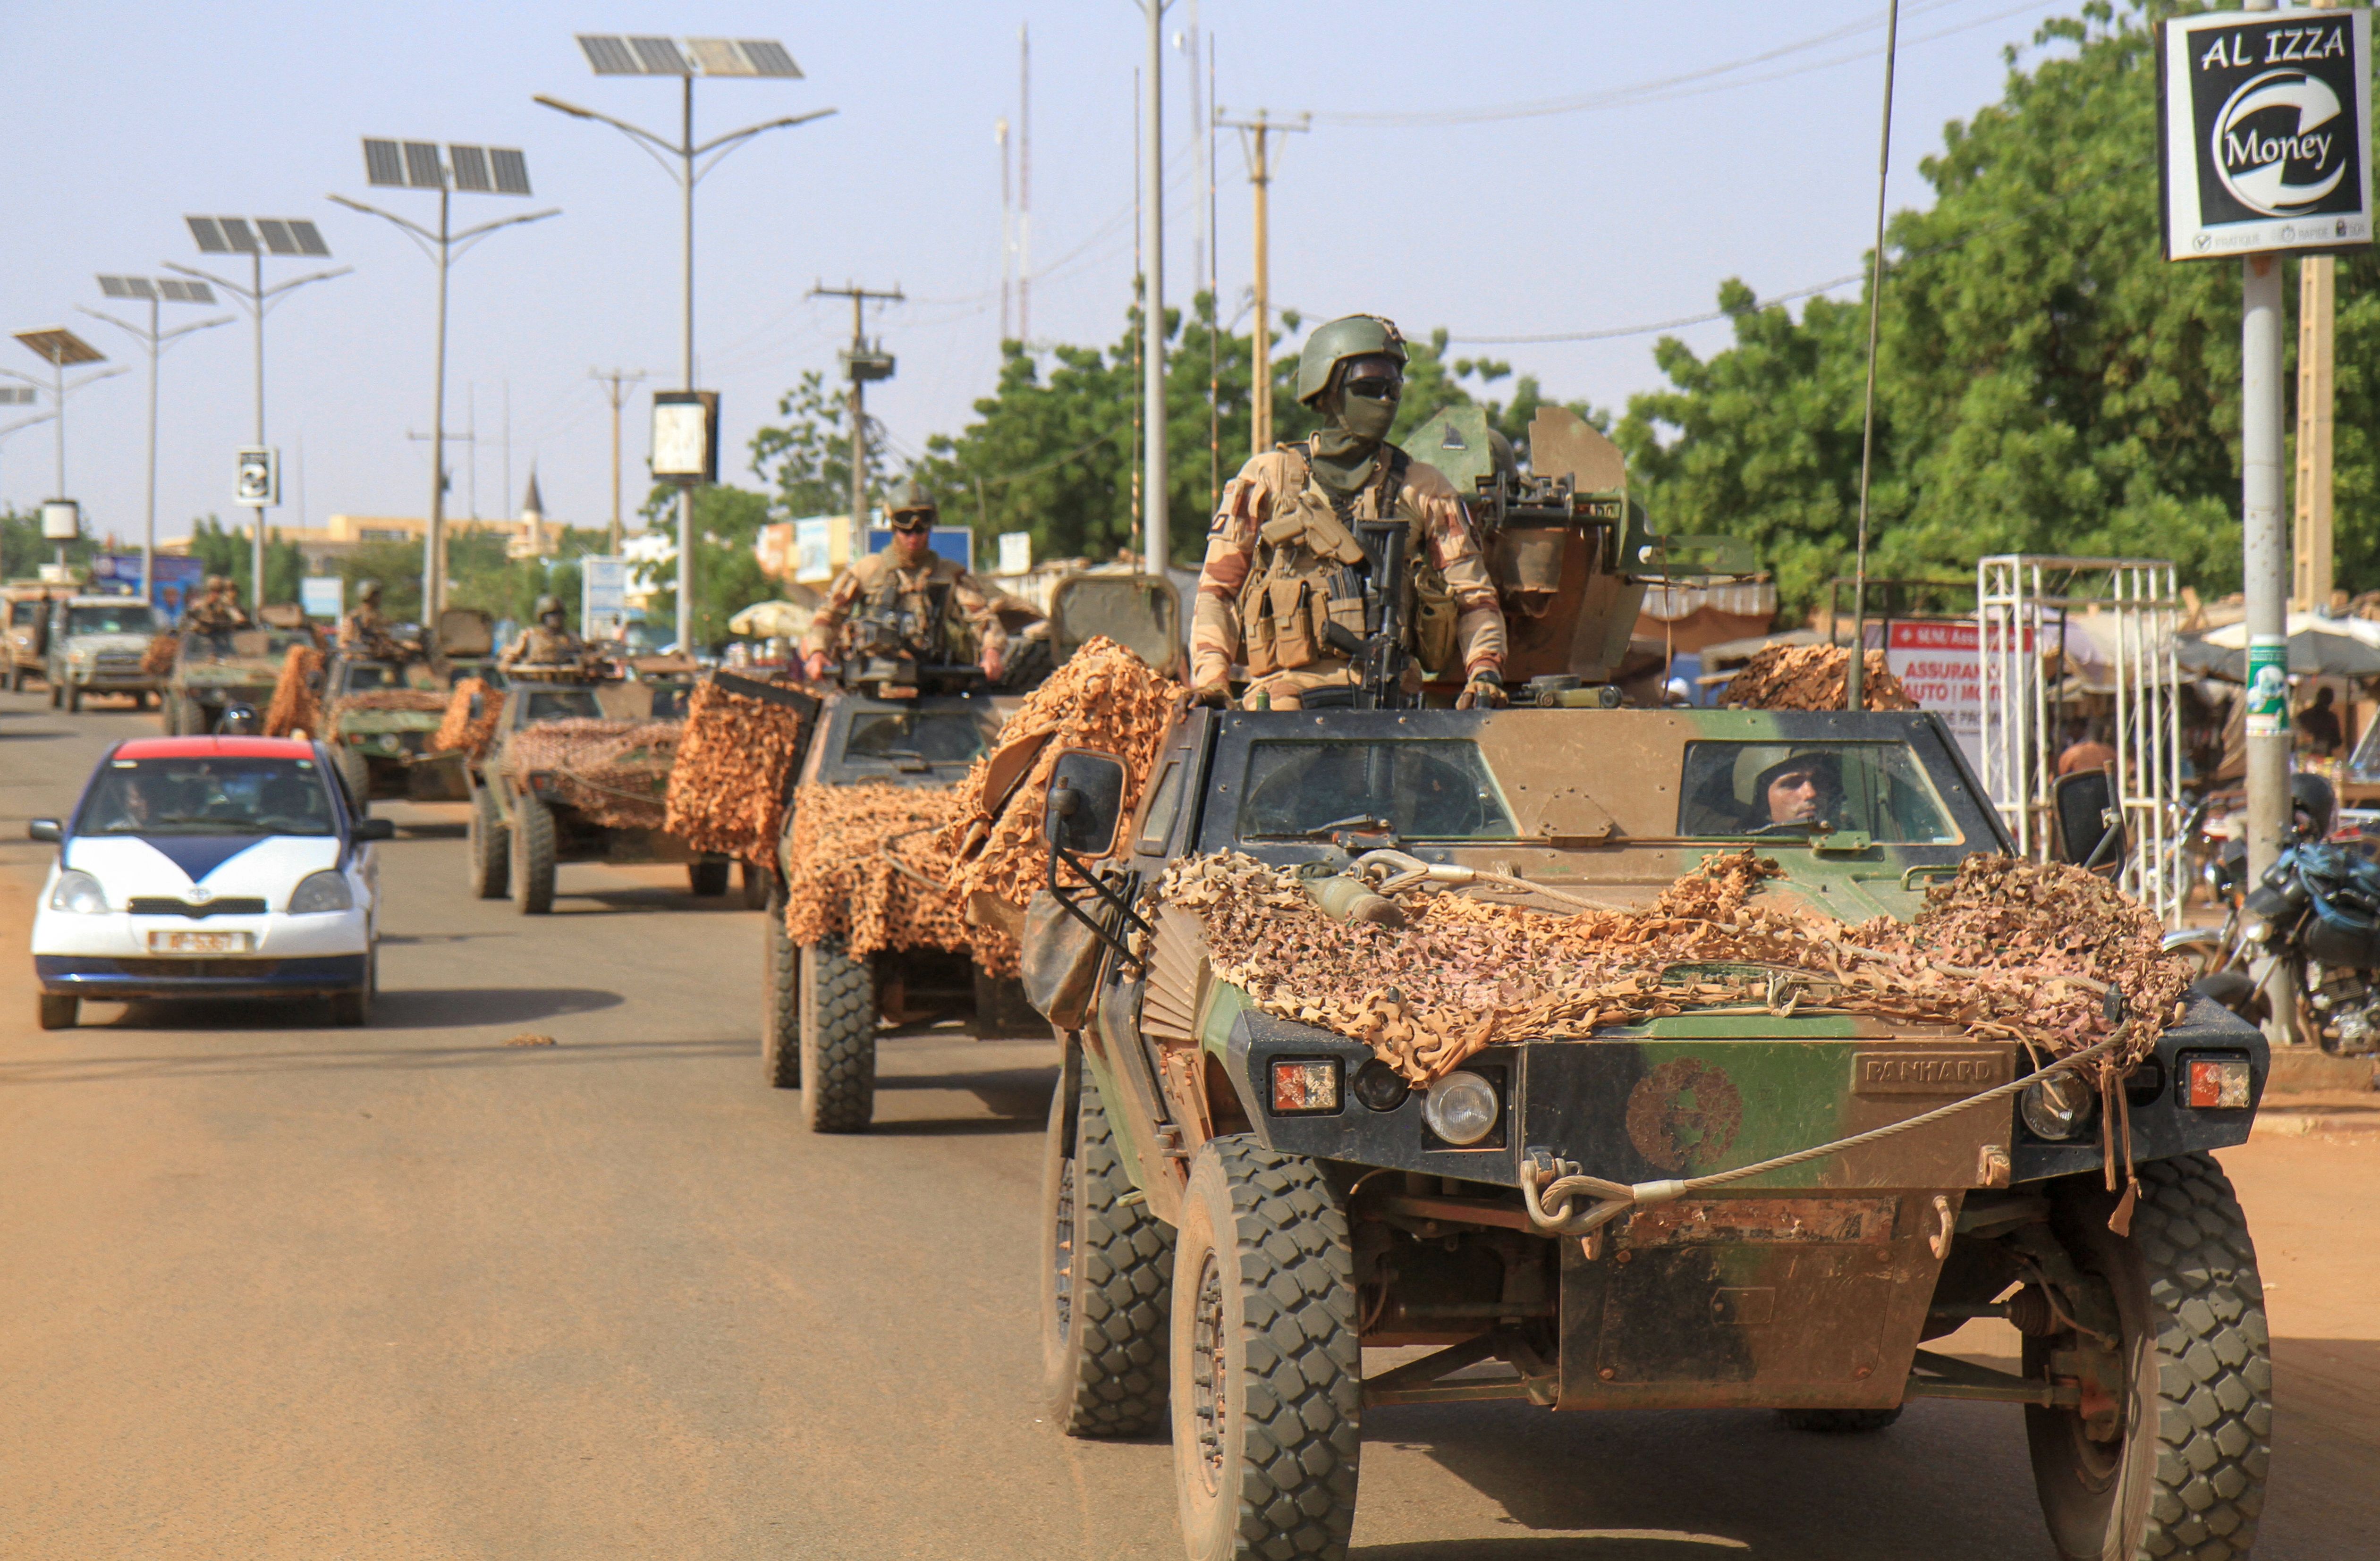 Forţele franceze încep să părăsească Nigerul. Direcţia Ciad! - 1-1697009176.jpg